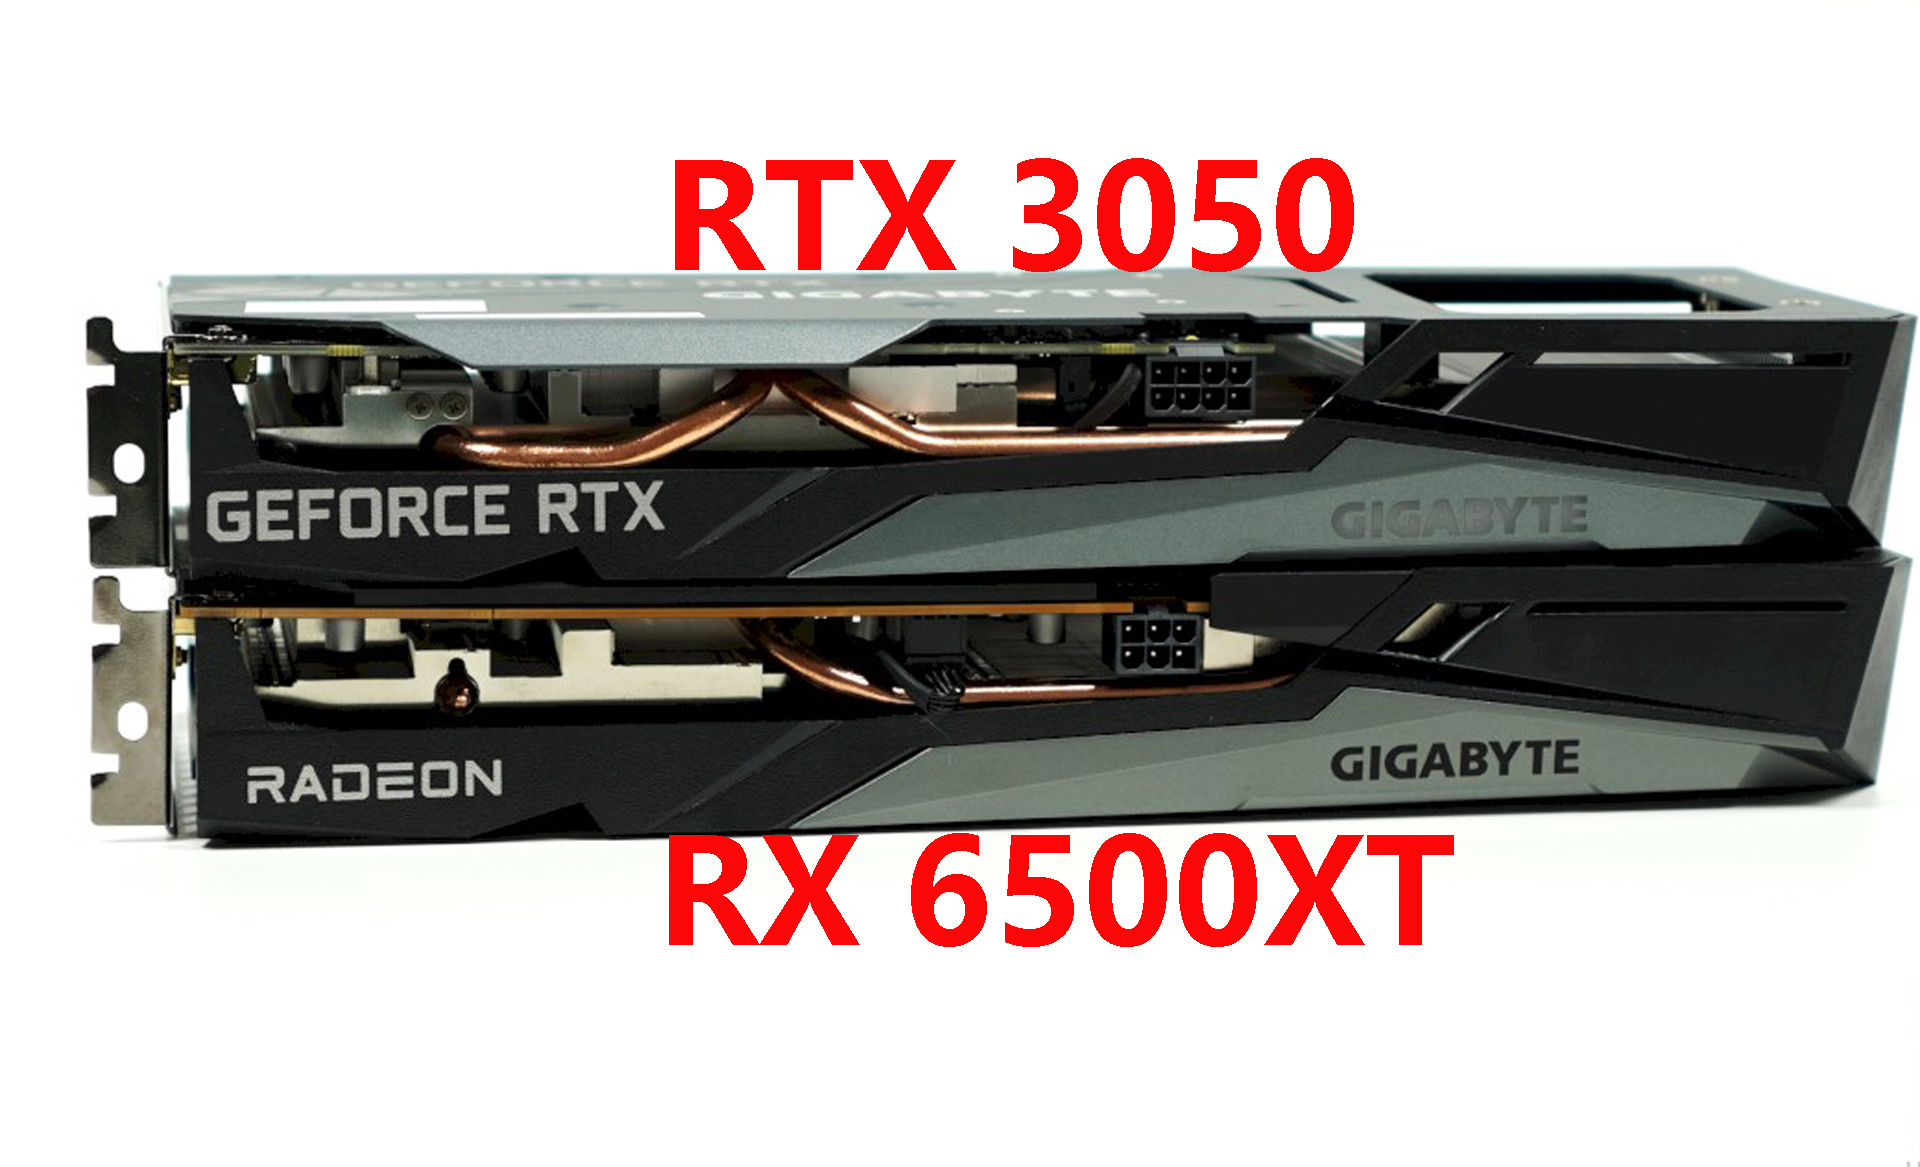 摩托罗拉|RTX 3050与 RX 6500XT对比评测：差价近1000元，该怎么选？